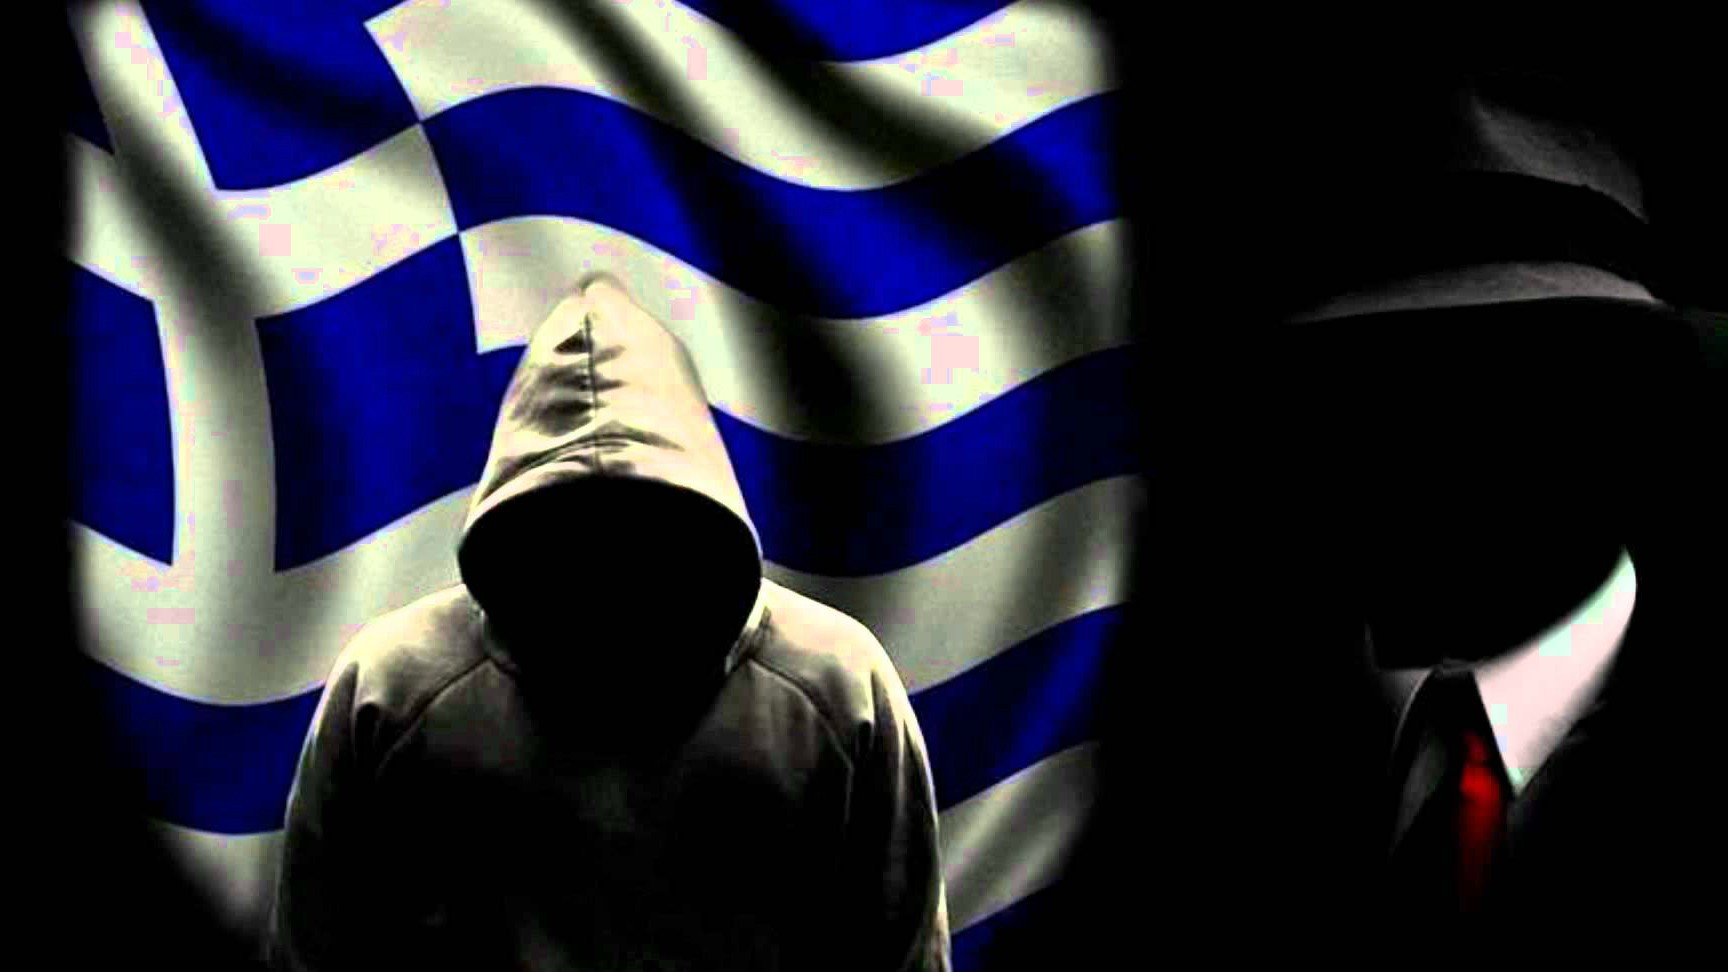 Οι Έλληνες Anonymous χάκαραν την ιστοσελίδα της τουρκικής αστυνομίας- Οι φωτογραφίες του Ερντογάν με το Γκόλουμ (φωτό)